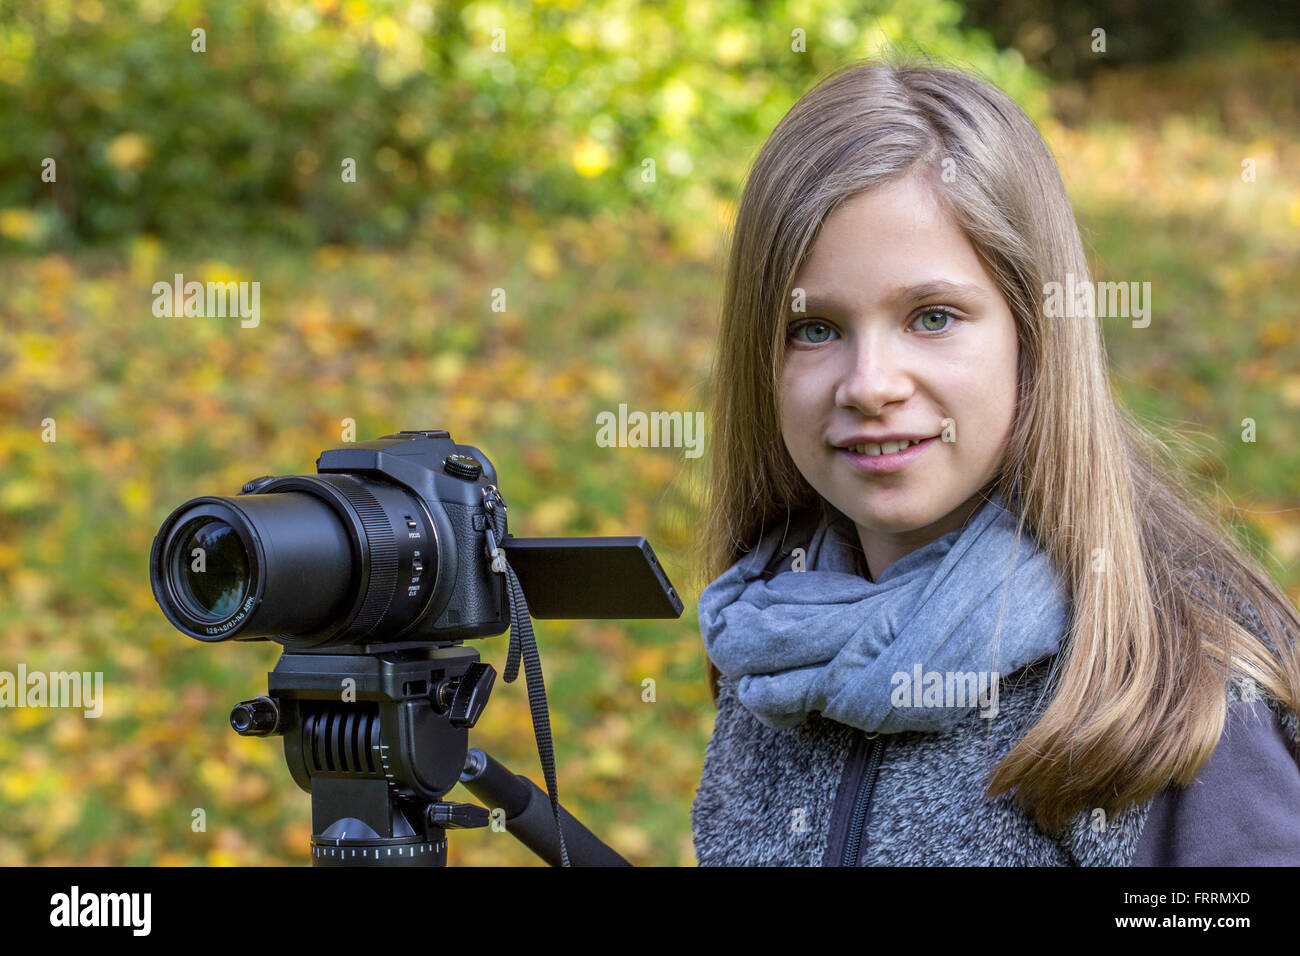 Jeune fille avec un appareil photo sur un trépied Banque D'Images